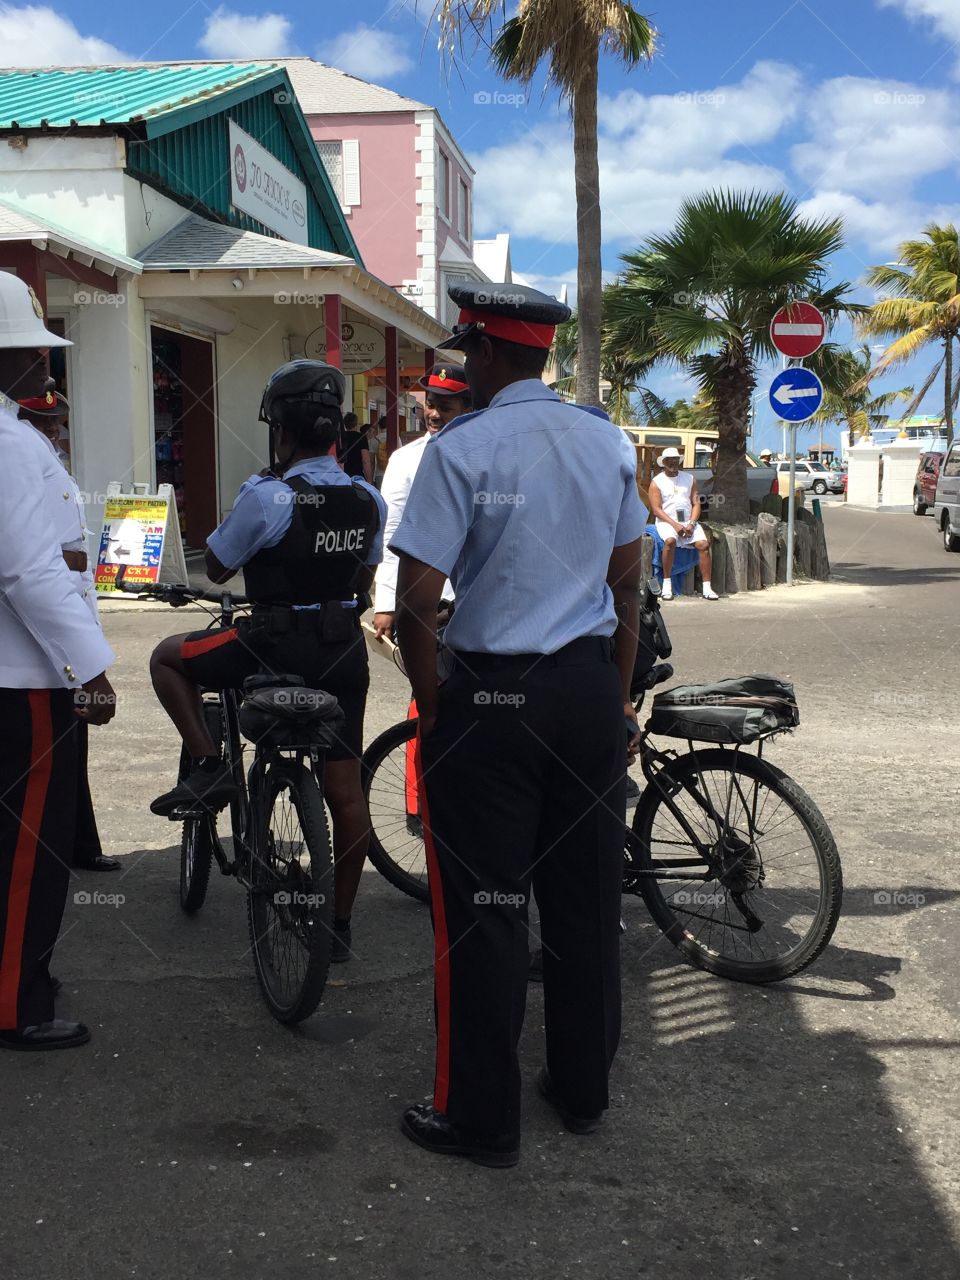 Bahamian police